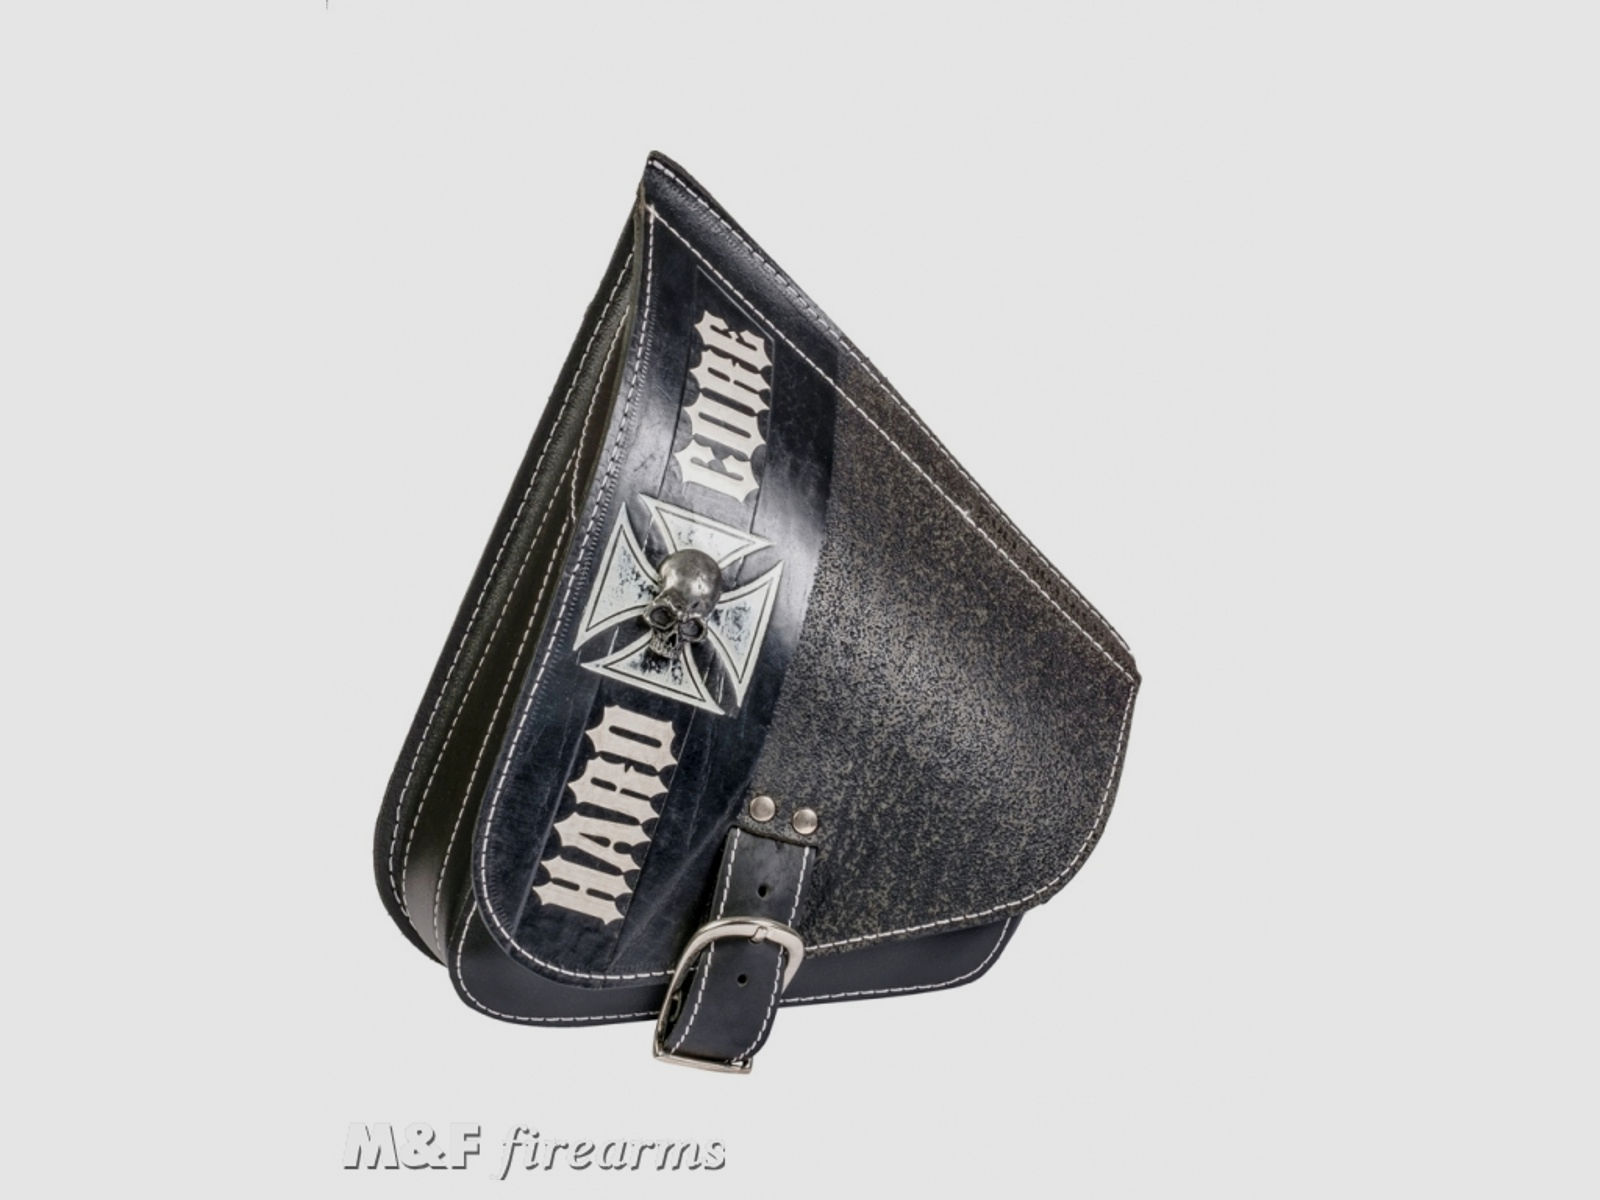 AGM Rahmentasche (Schwingentasche), linksseitig, passend für alle Harley-Davidson Softailmodelle